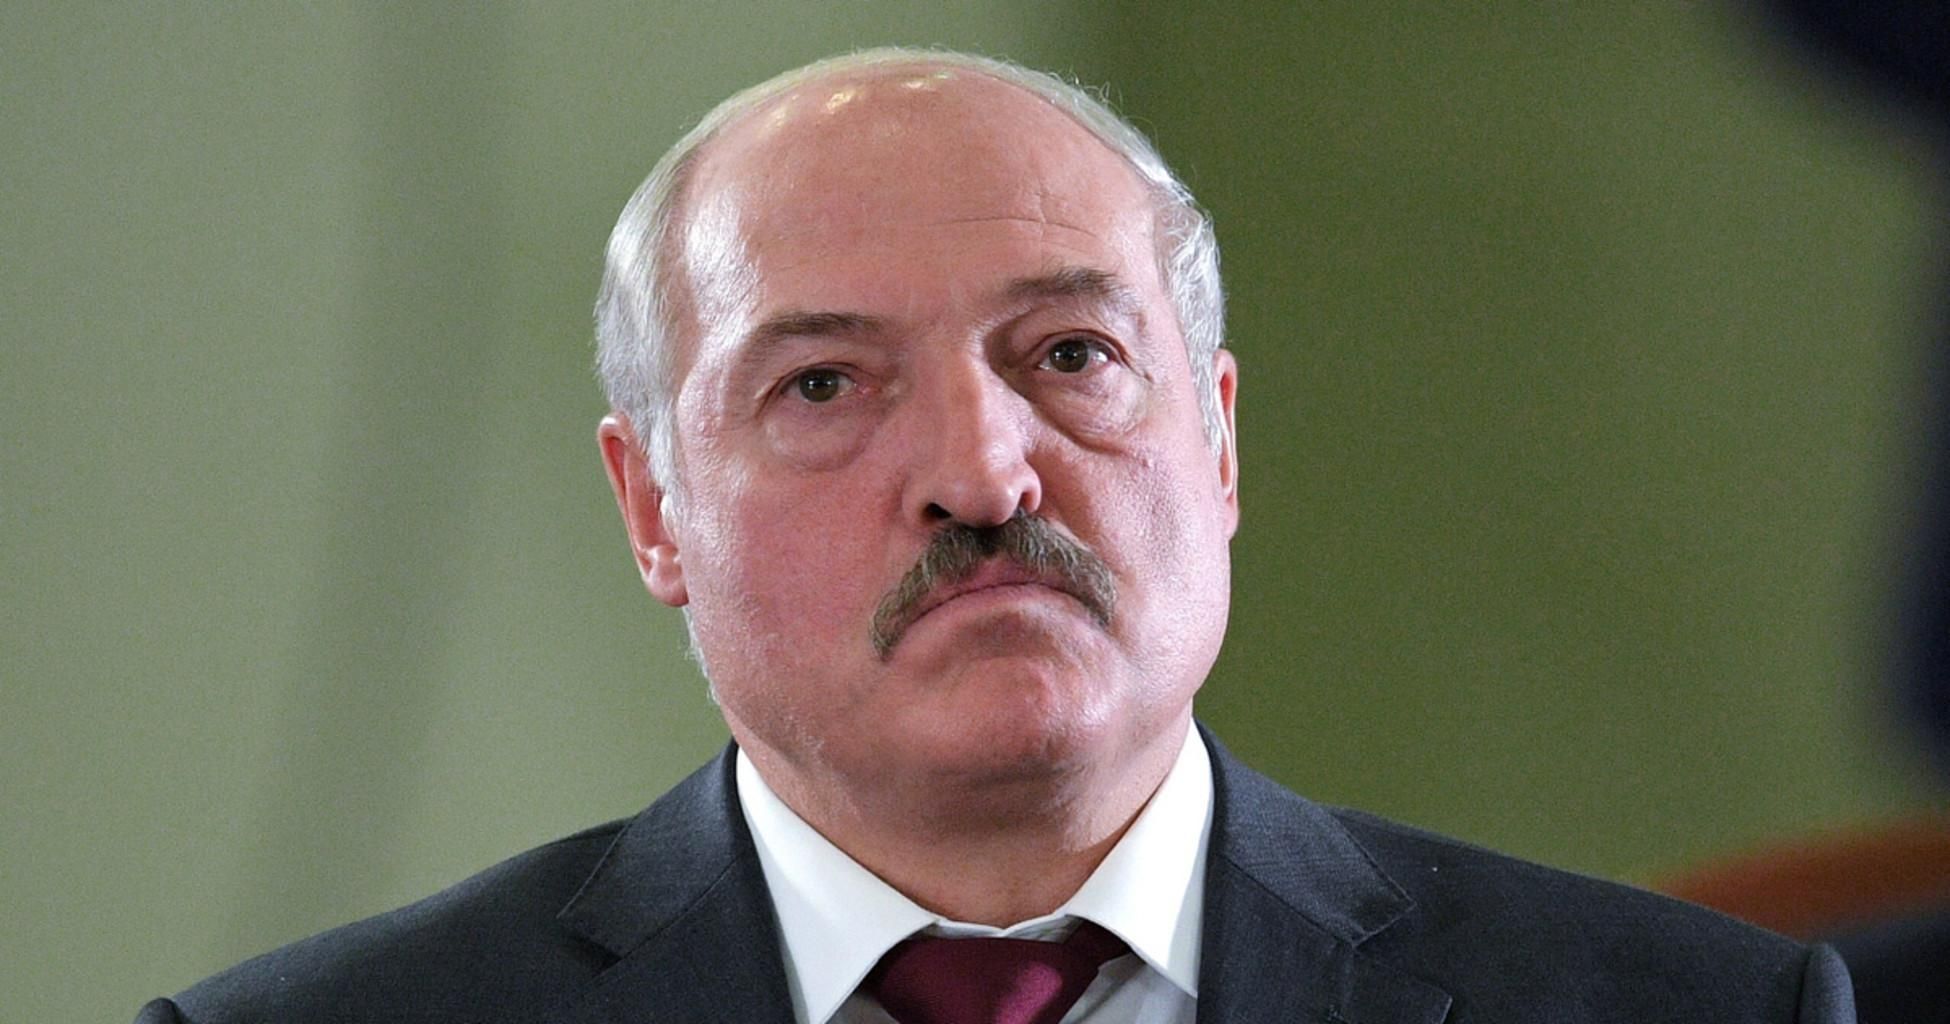 Получит 90% голосов, – Яковина сказал, кто может победить Лукашенко на выборах